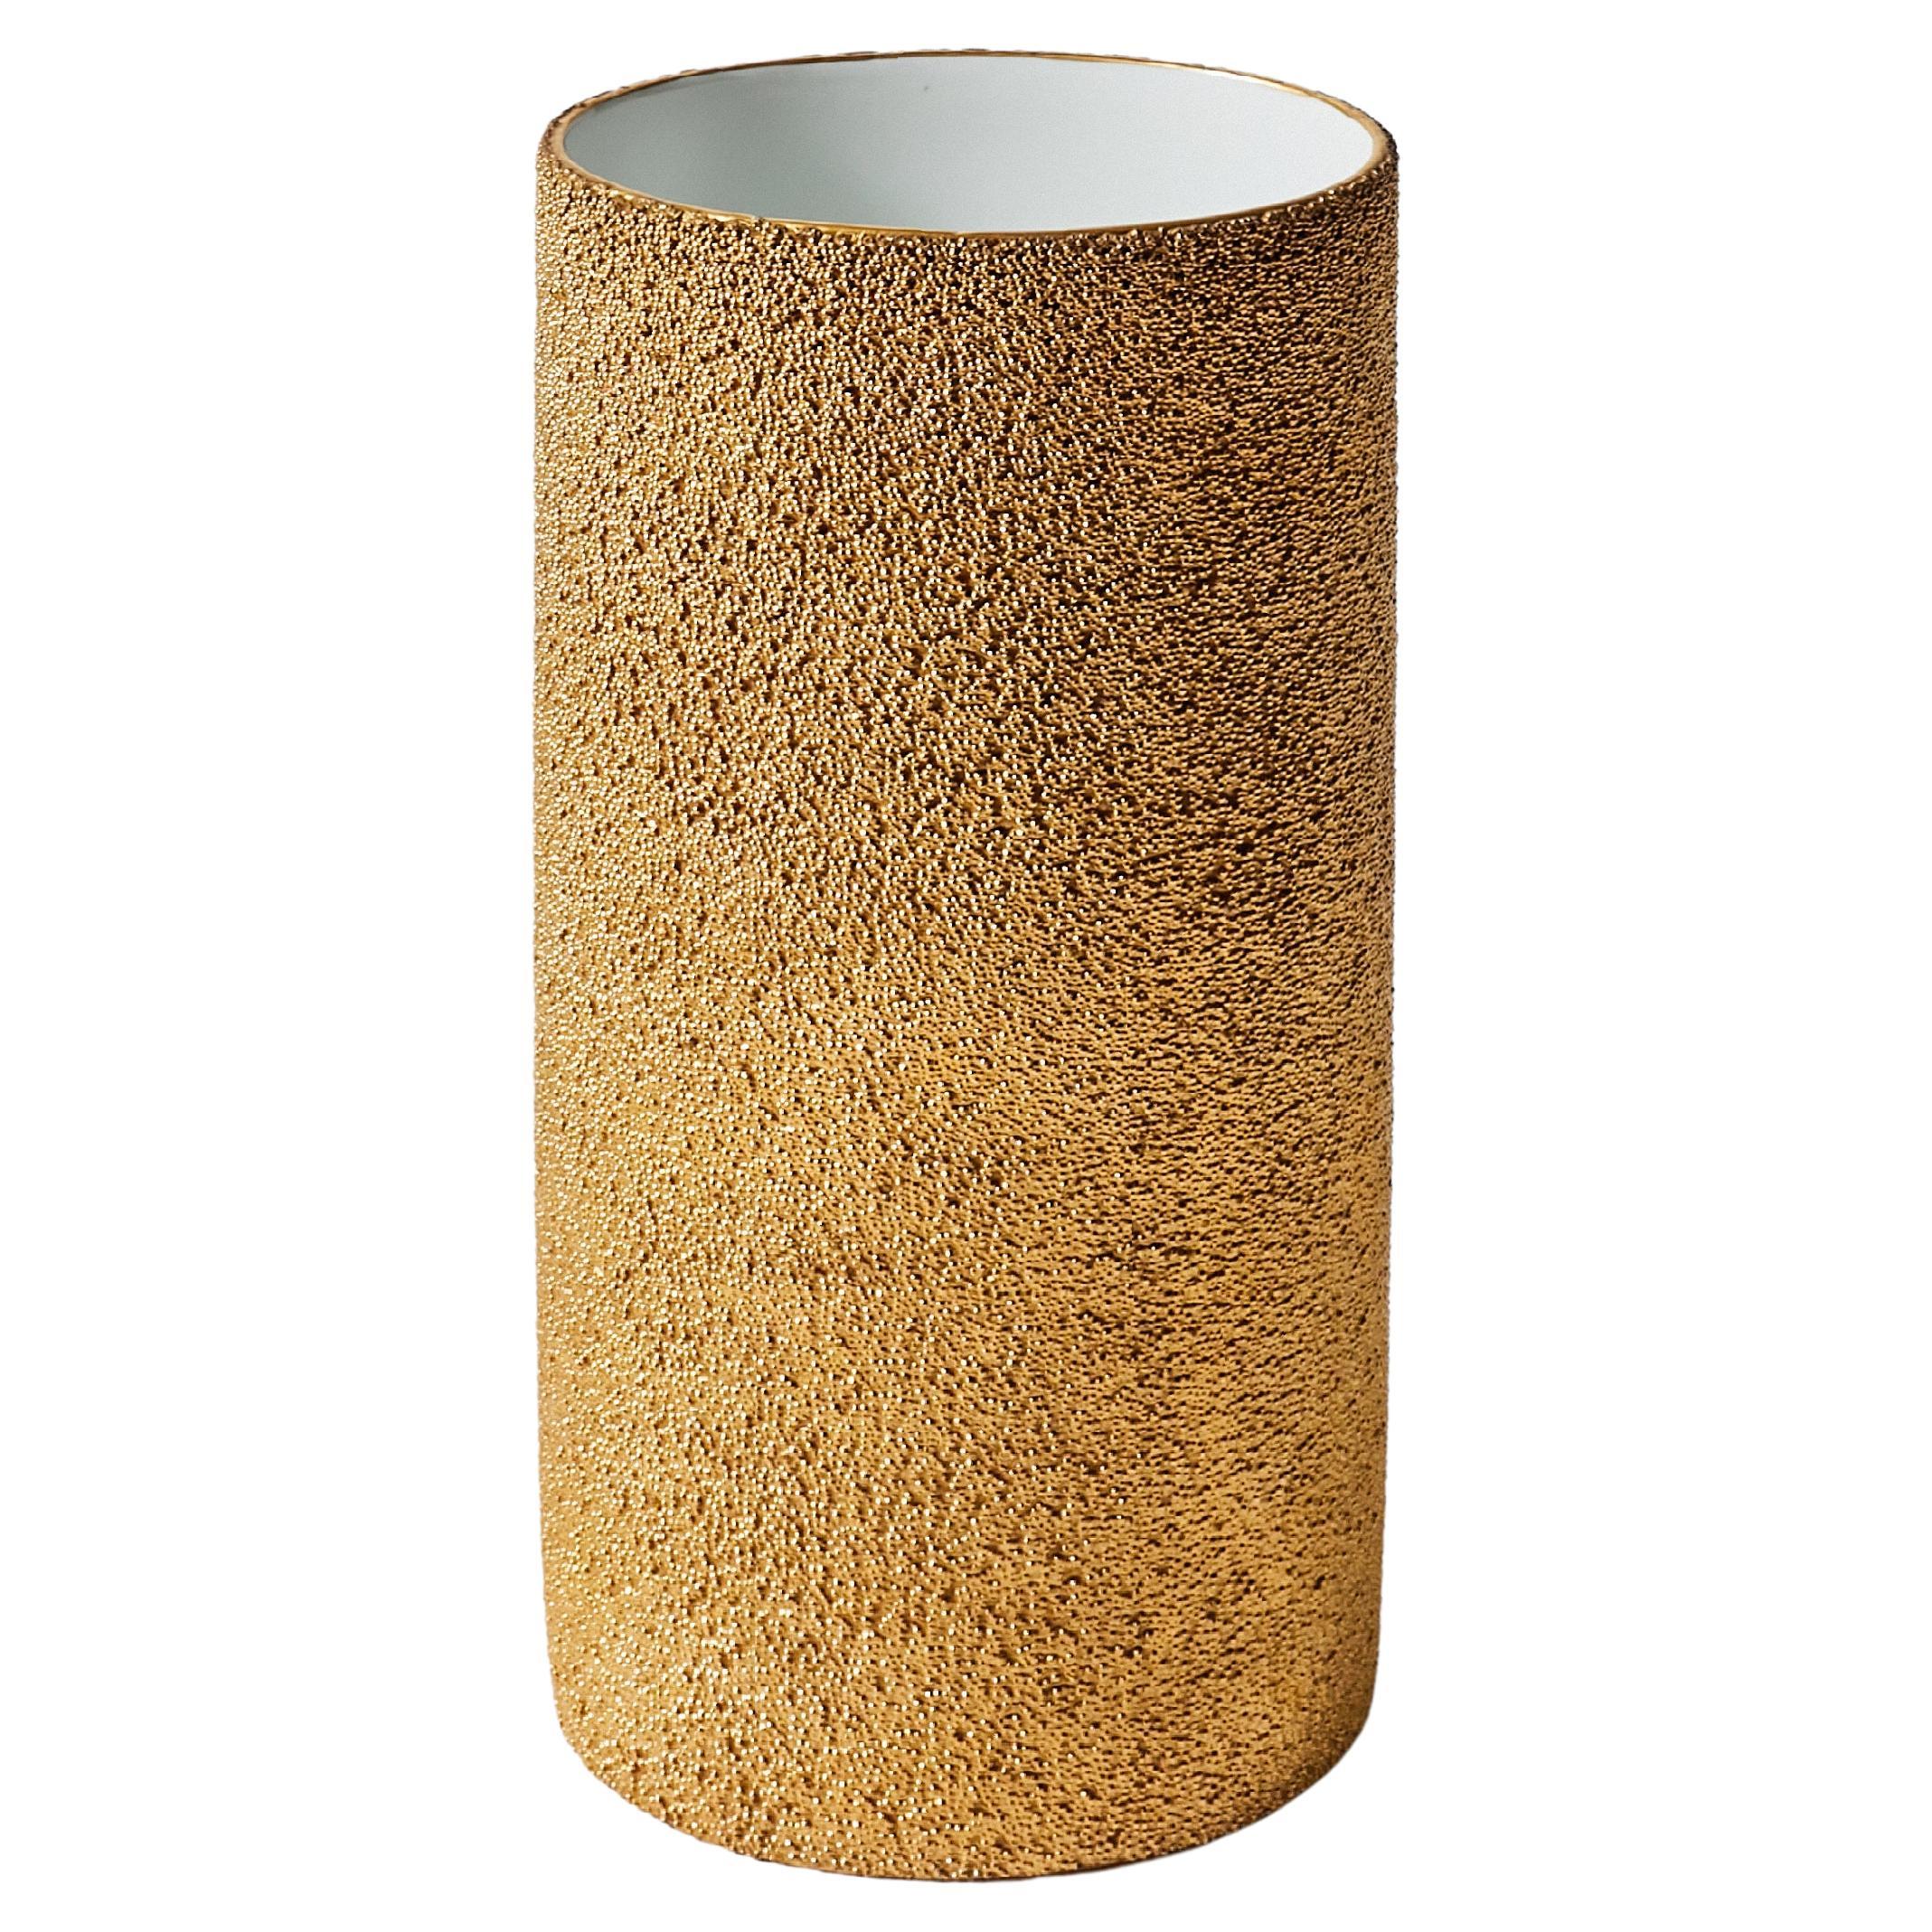 Große Studio-Vase aus goldenem Porzellan von Rosenthal